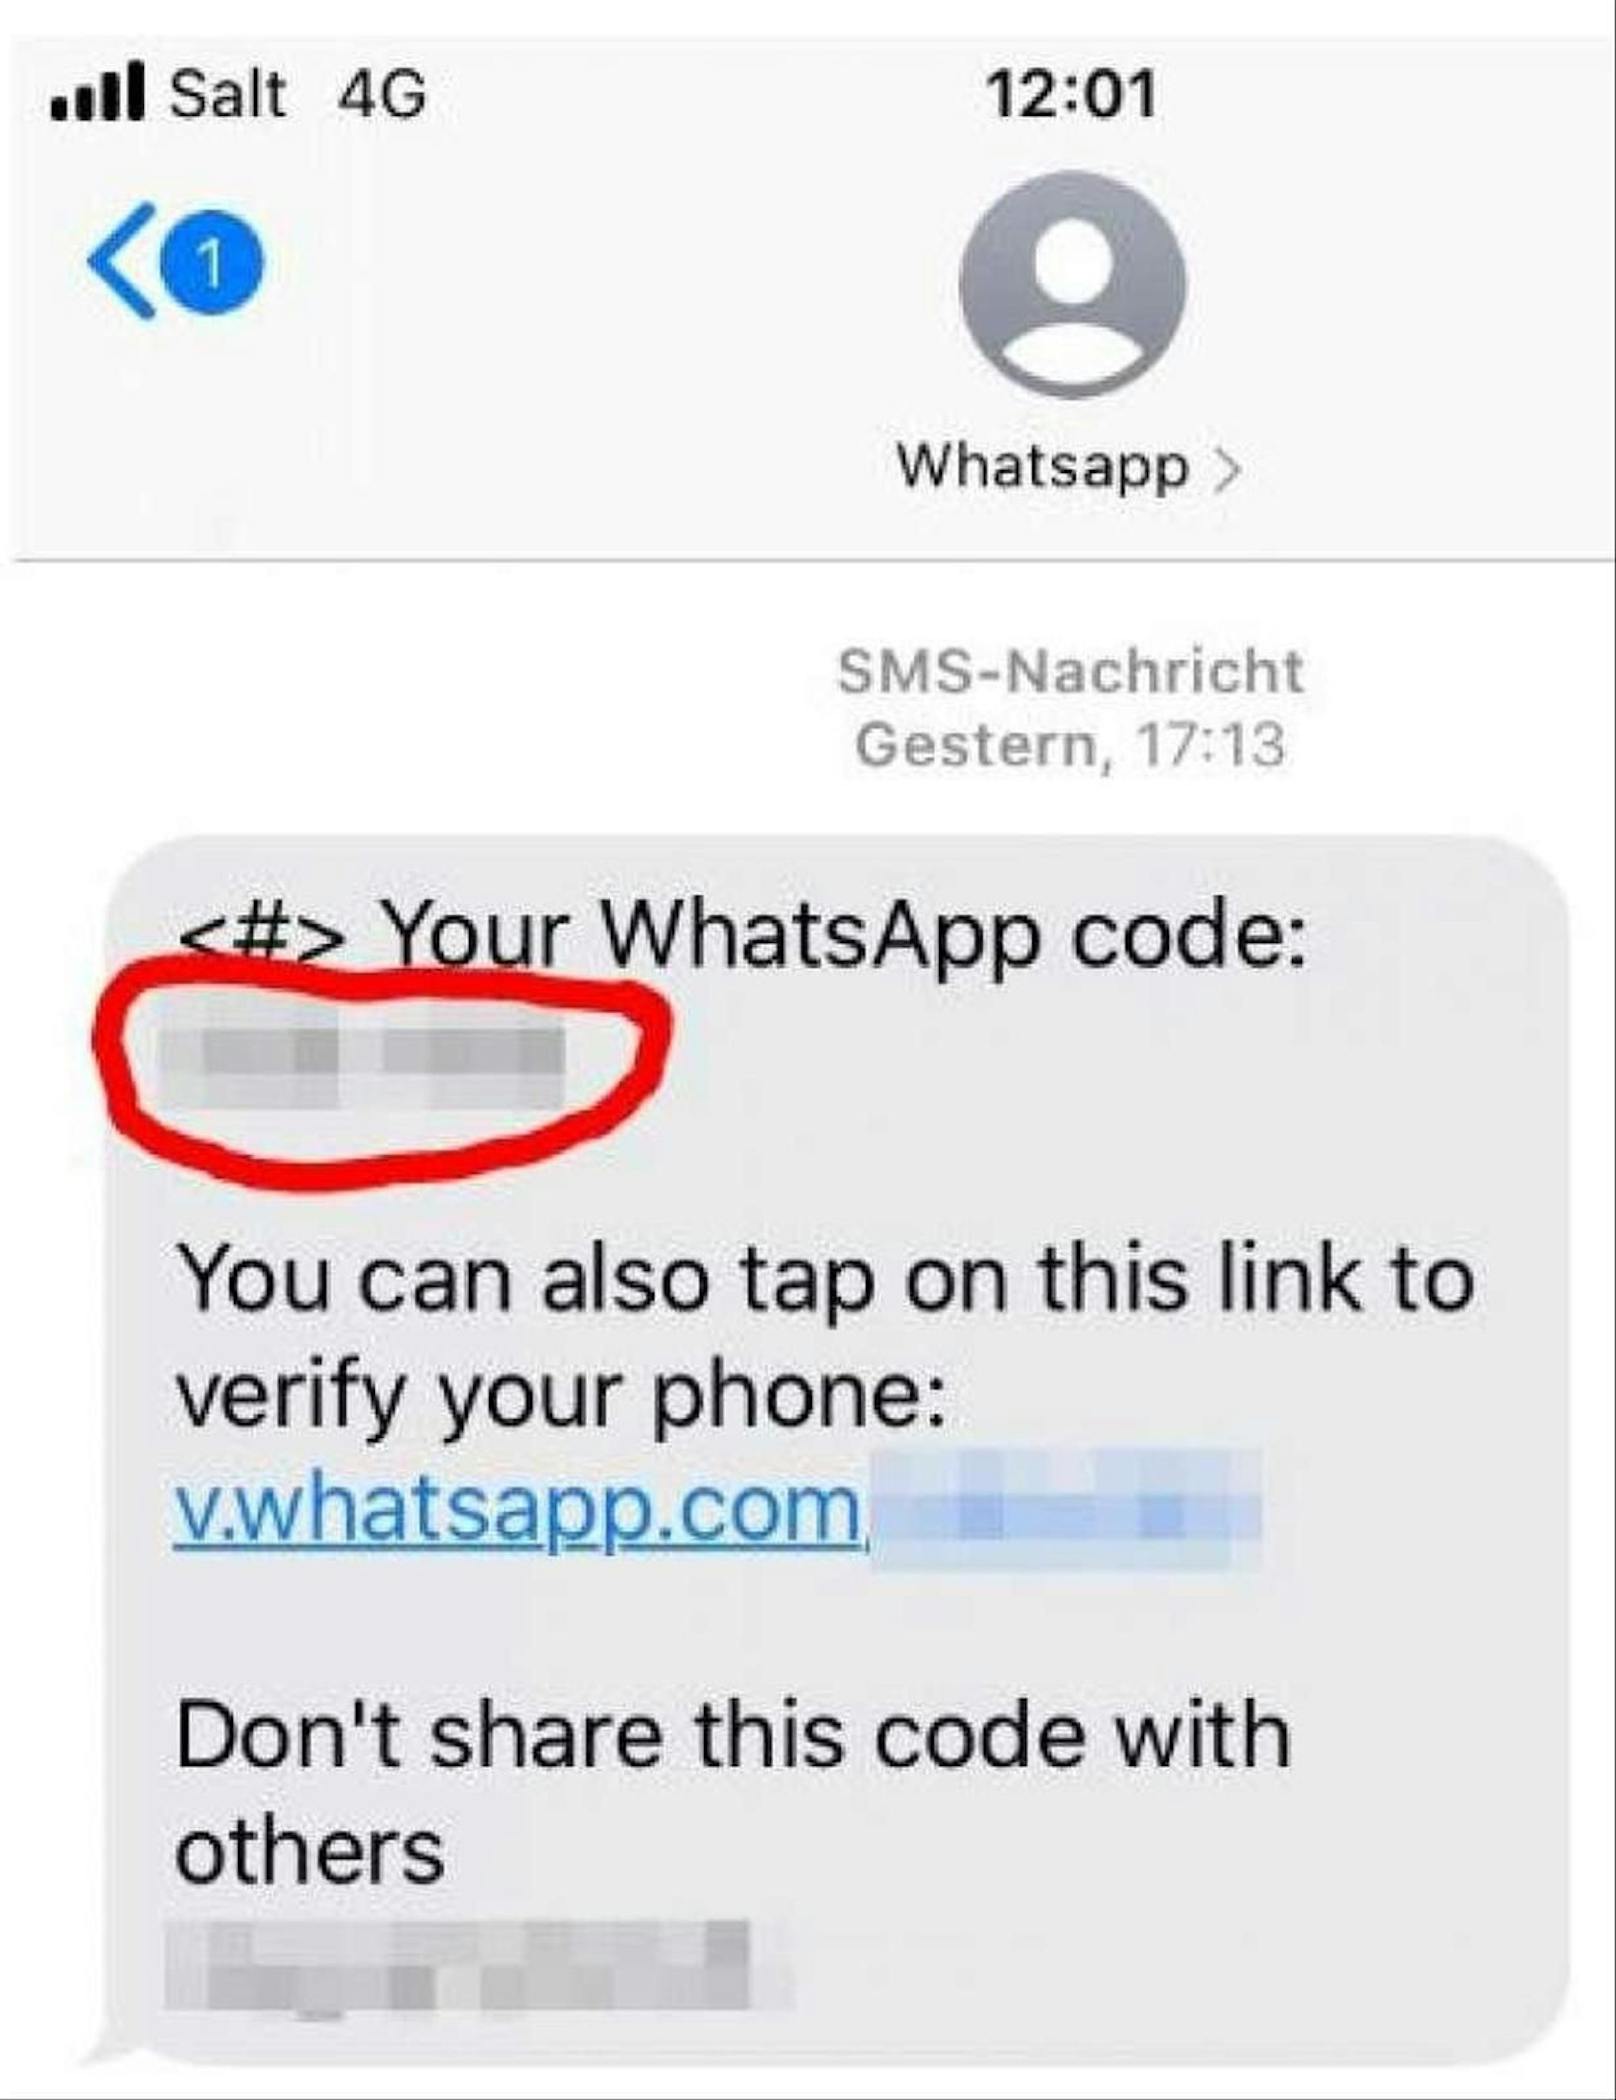 Beim erfragten 6-stelligen Code handelt es sich um den Verifizierungs-Code für das eigene WhatsApp-Profil.